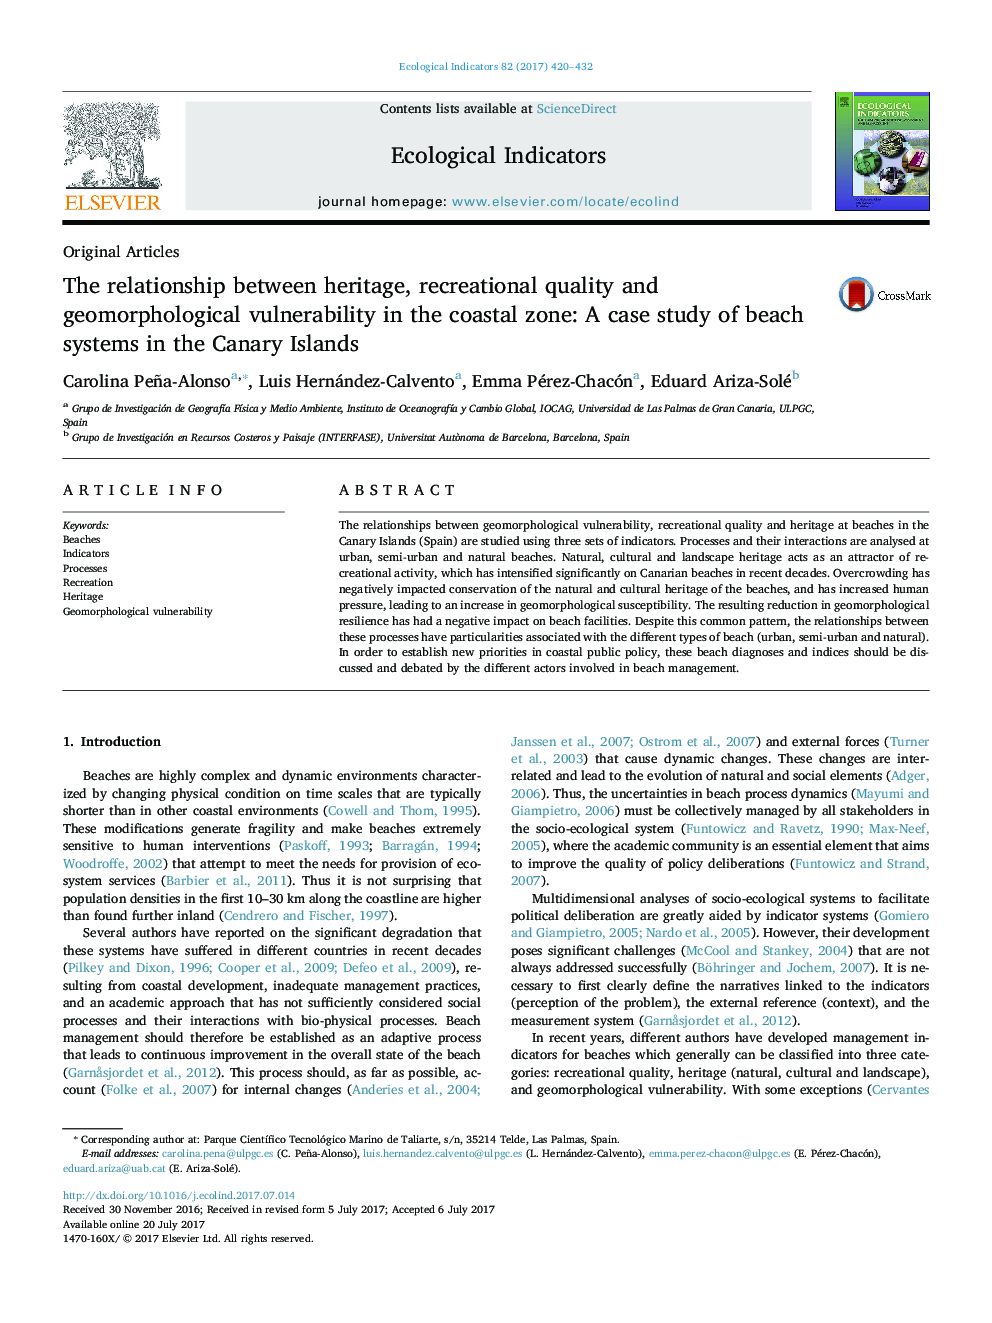 مقالات اصلی ارتباط بین میراث، کیفیت تفریحی و آسیب پذیری ژئومورفولوژیکی در منطقه ساحلی: مطالعه موردی سیستم های ساحلی در جزایر قناری 